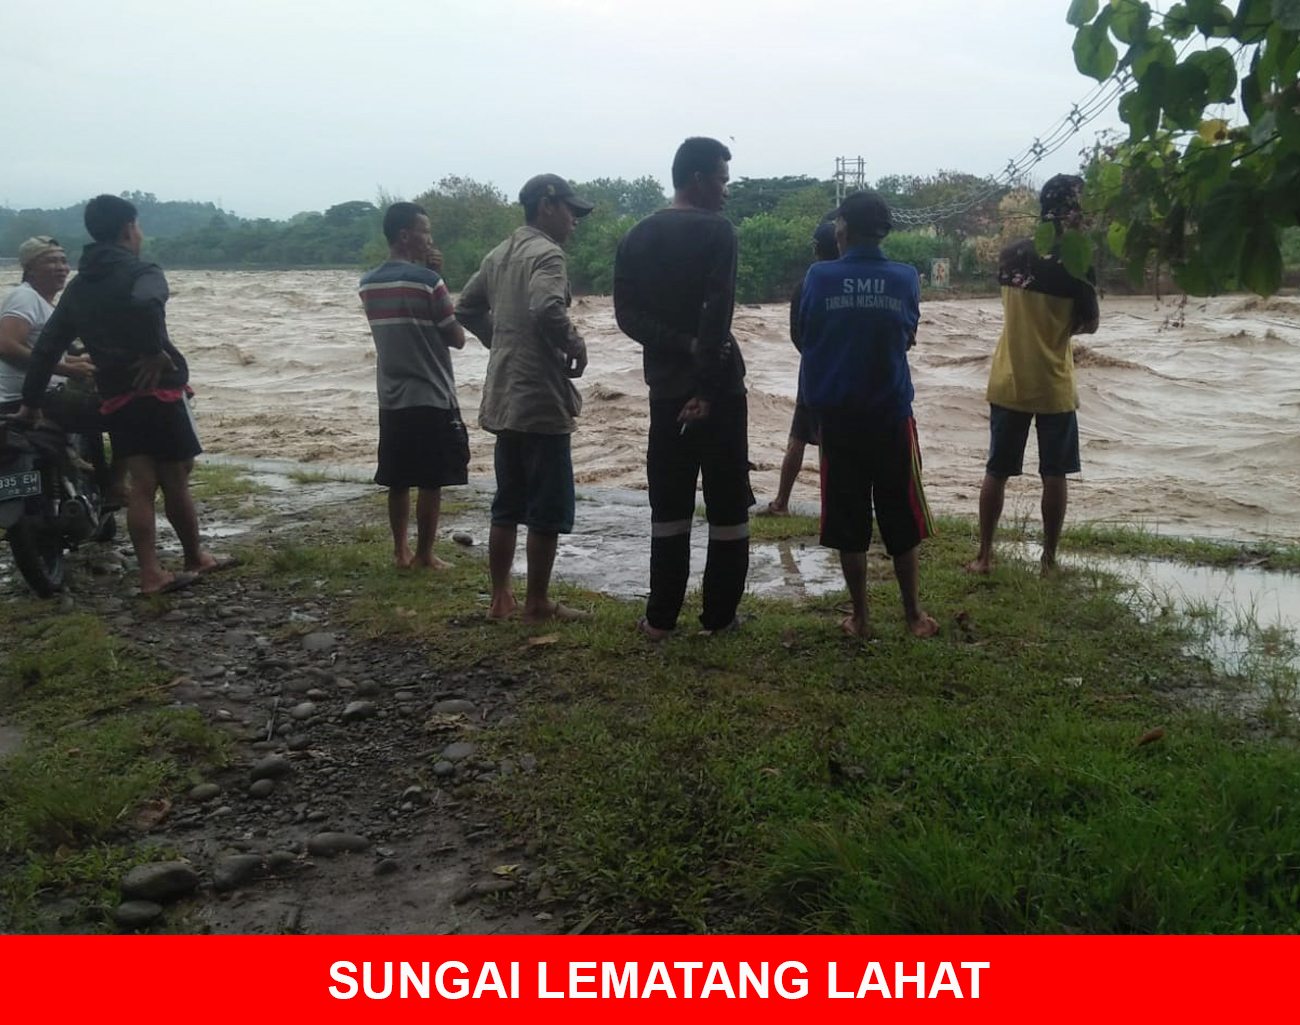 Perangkat Desa dan Linmas Desa Tanjung Payang Siaga Banjir, Debit Air Sungai Lematang Lahat Naik